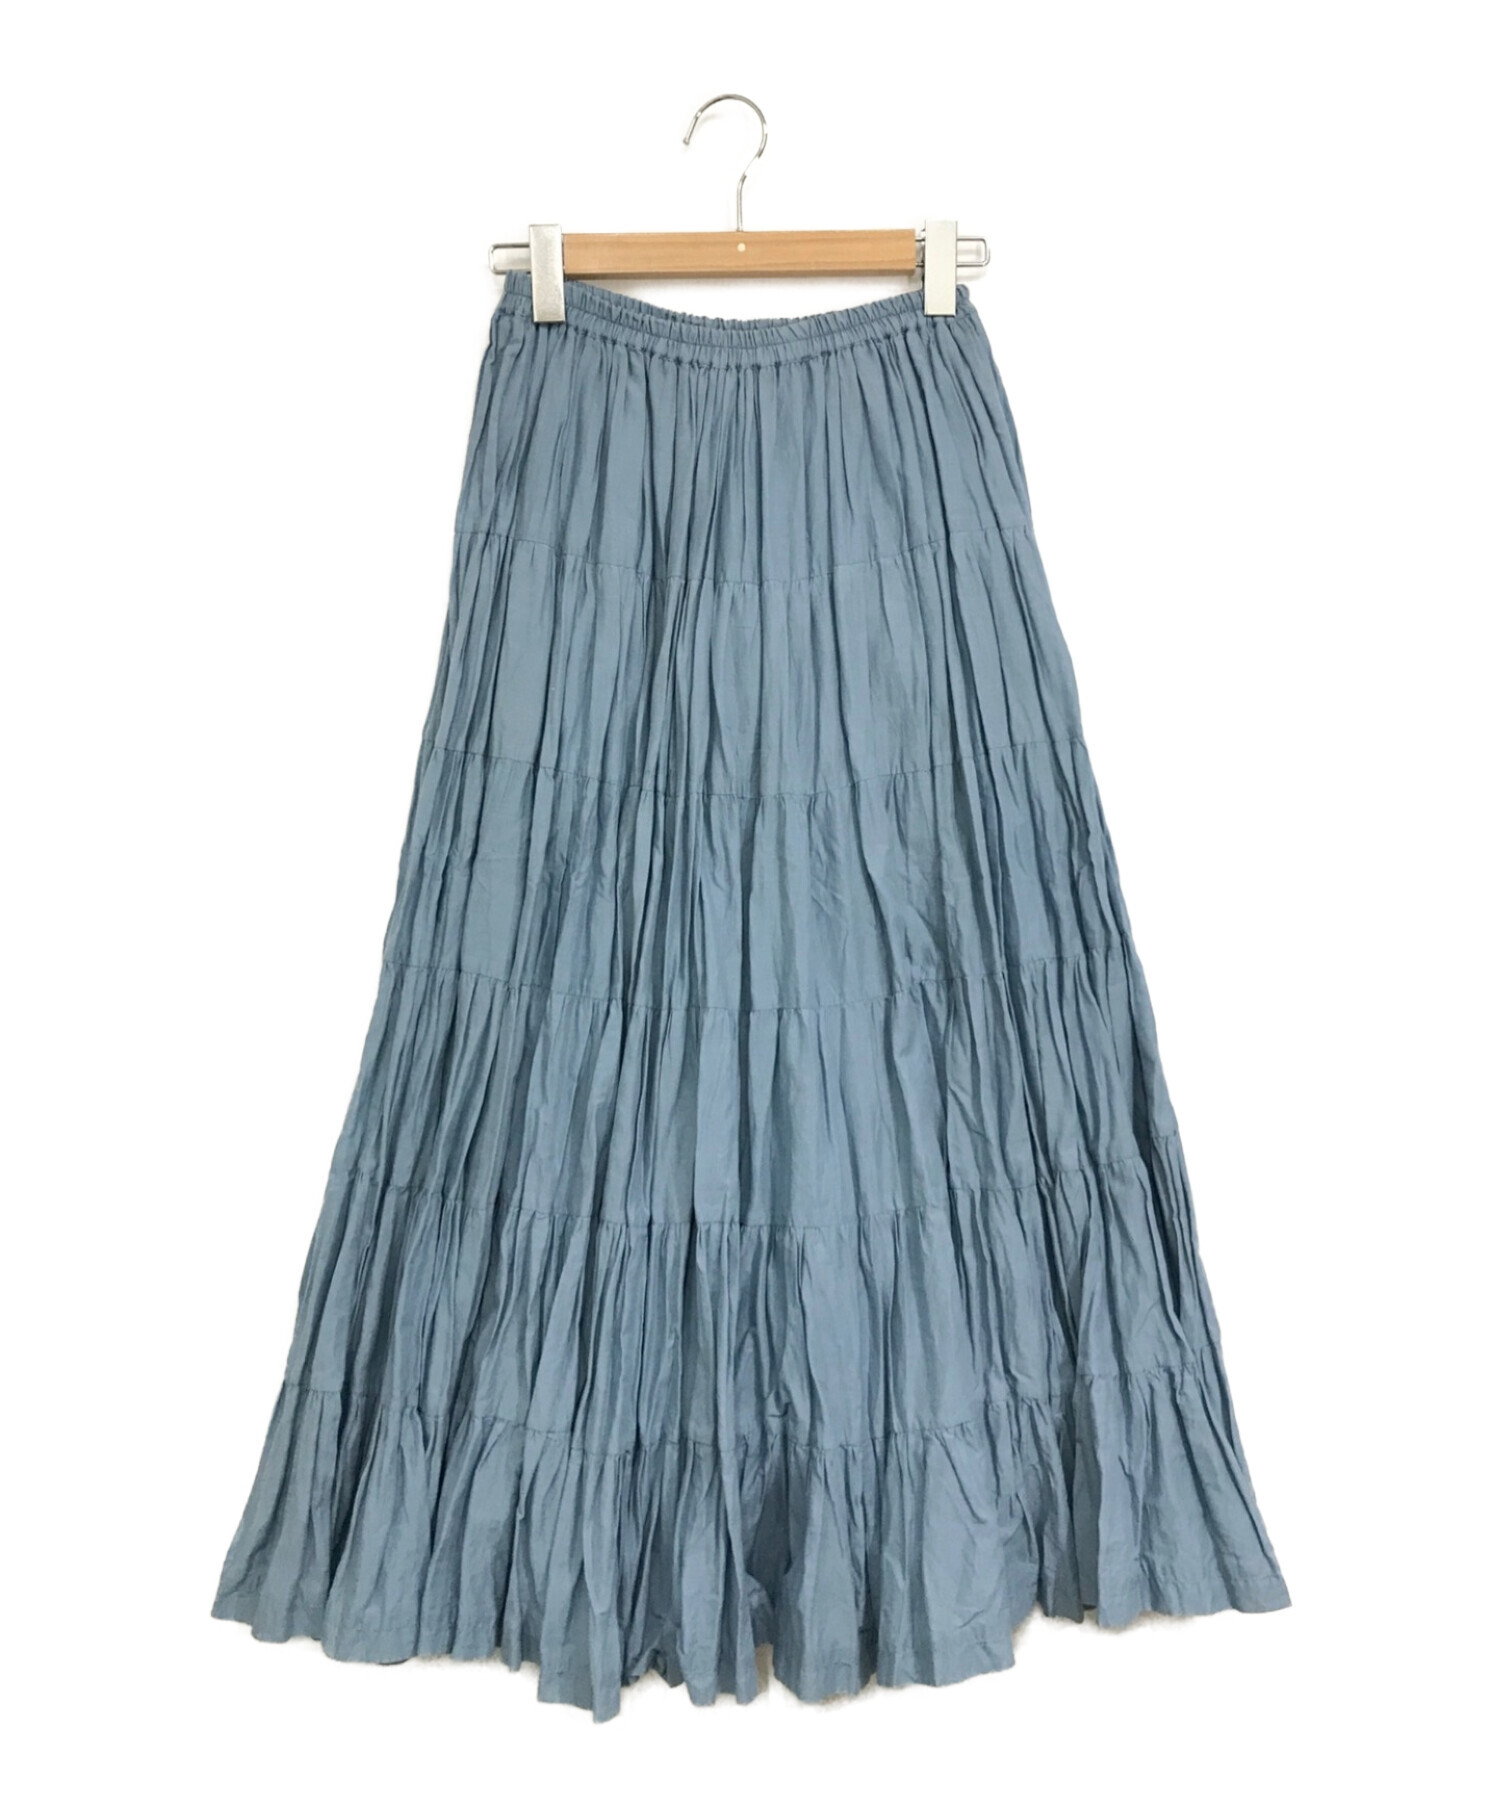 MARIHA (マリハ) Demi-Luxe Beams (デミルクス ビームス) 草原の虹スカート ブルー サイズ:下記参照